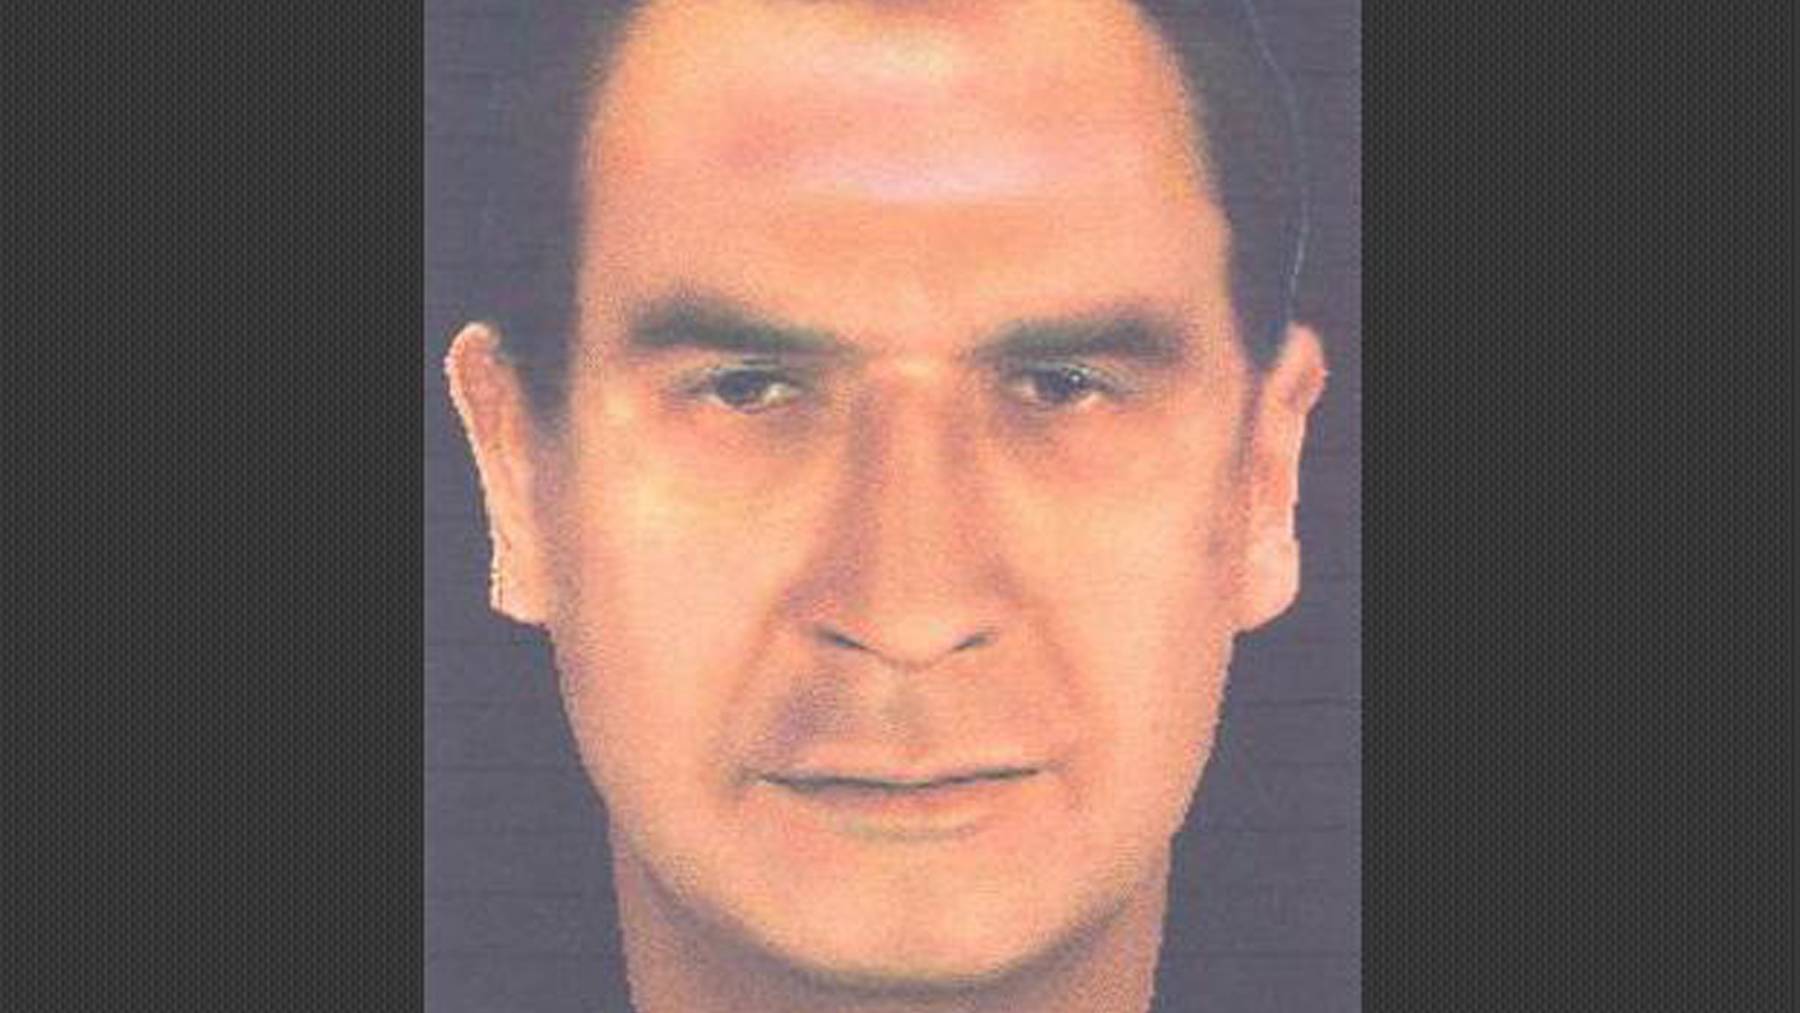 Das letzte bekannte Identitätsfoto des sizilianischen Mafiabosses Matteo Messina Denaro